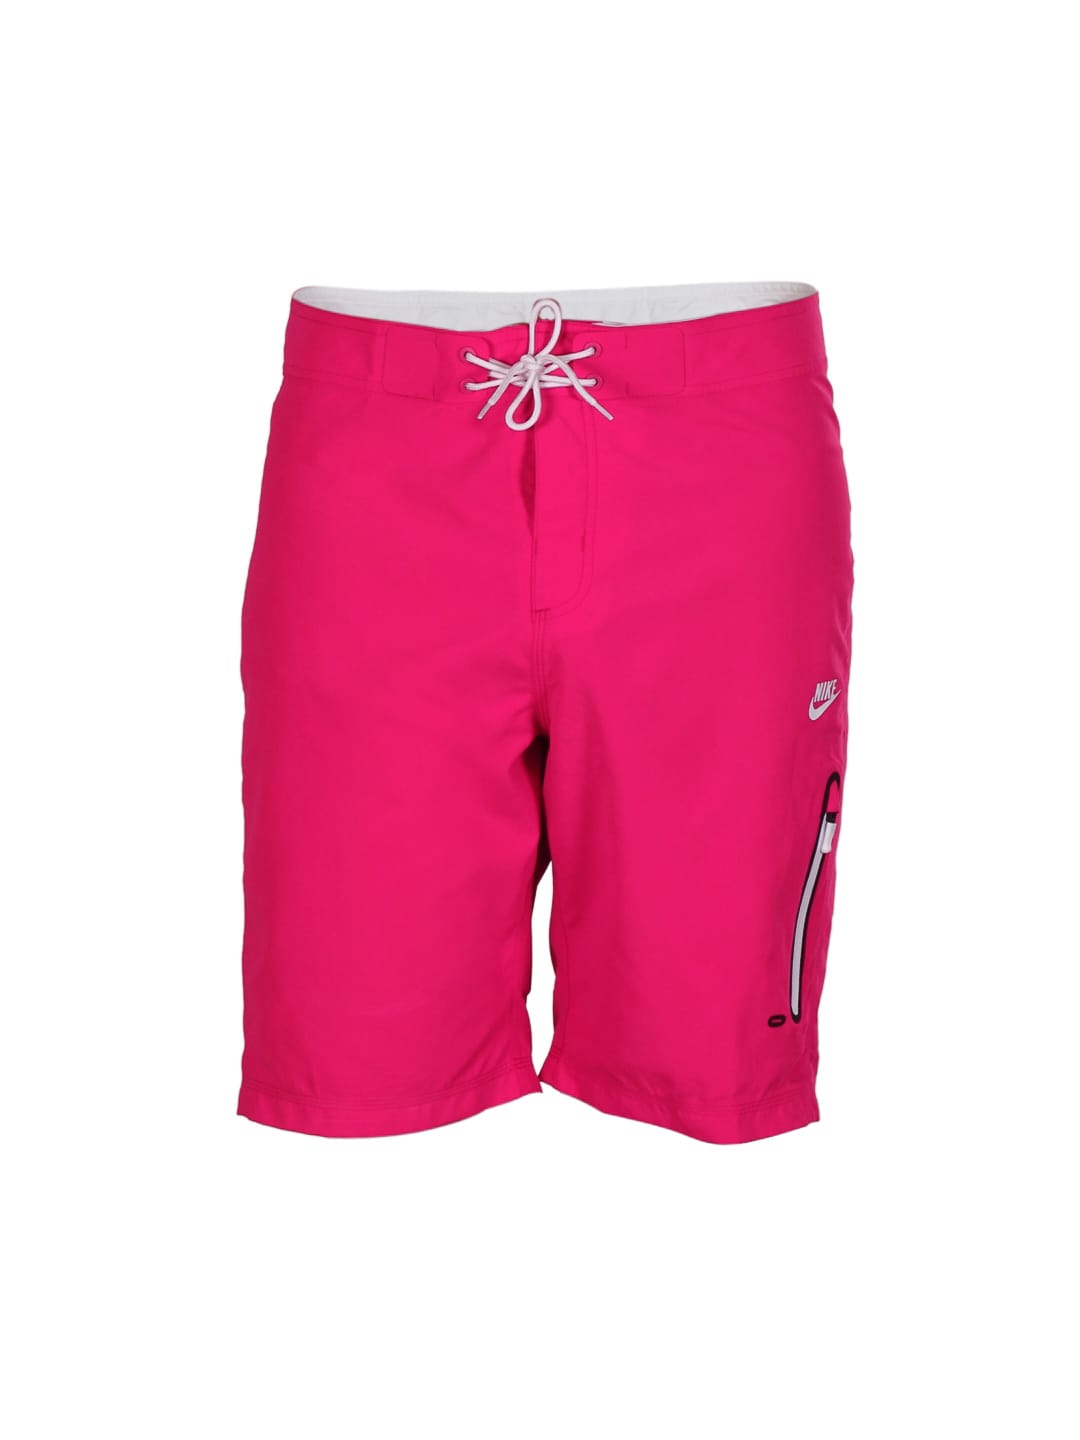 Nike Men Pink Shorts